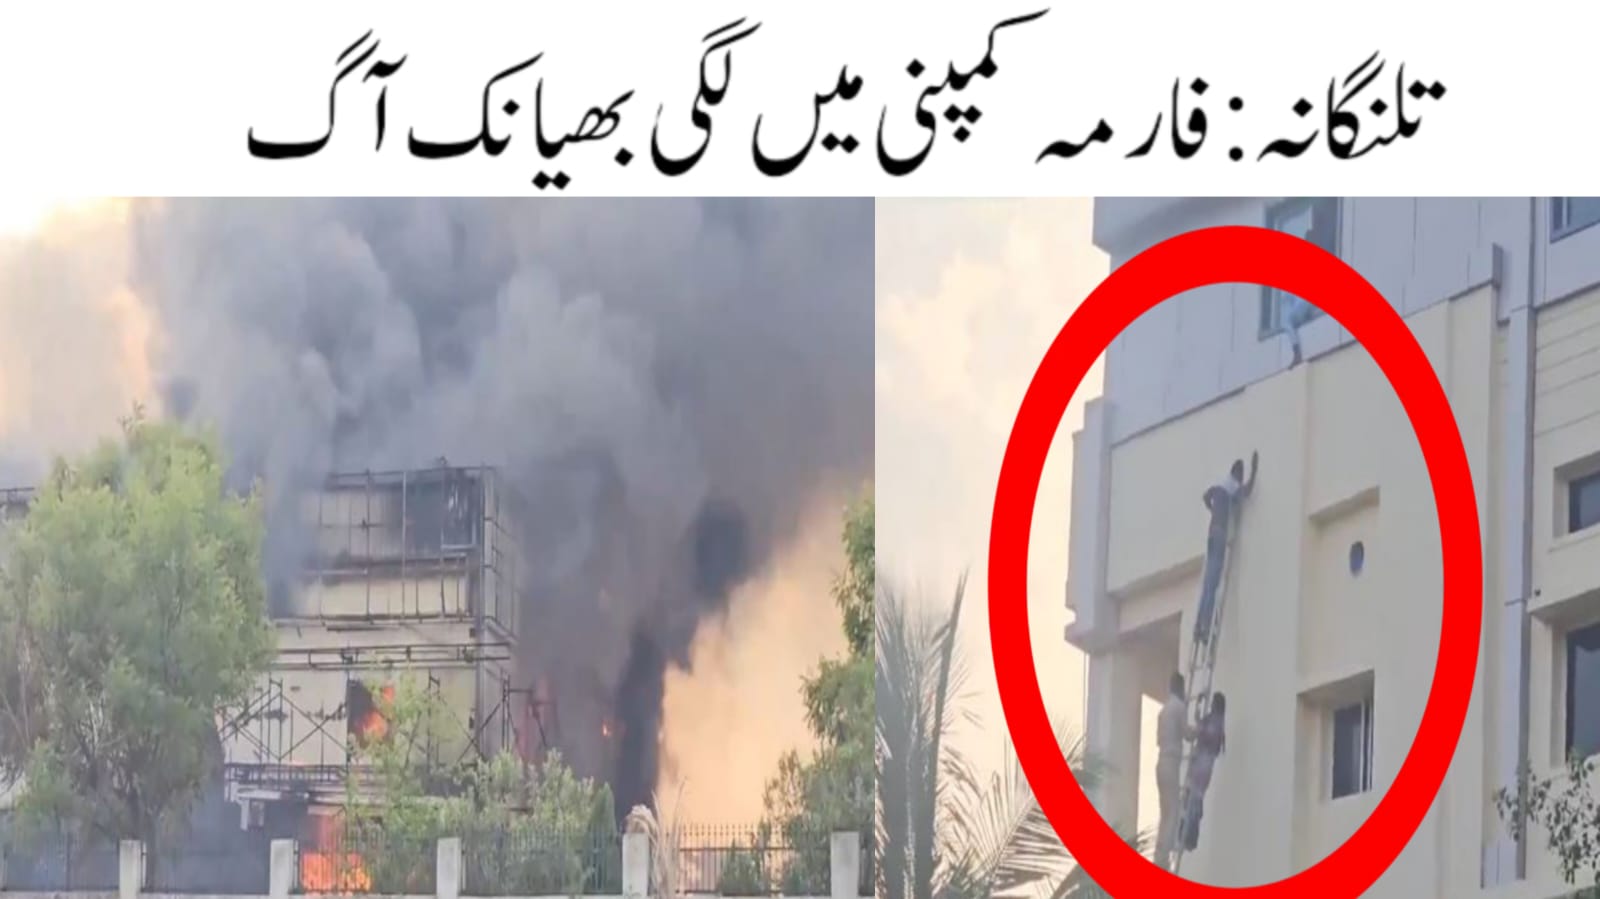 تلنگانہ: الون فارما کمپنی میں لگی آگ، عملے نے خوف کے مارے عمارت سے لگائی چھلانگ 